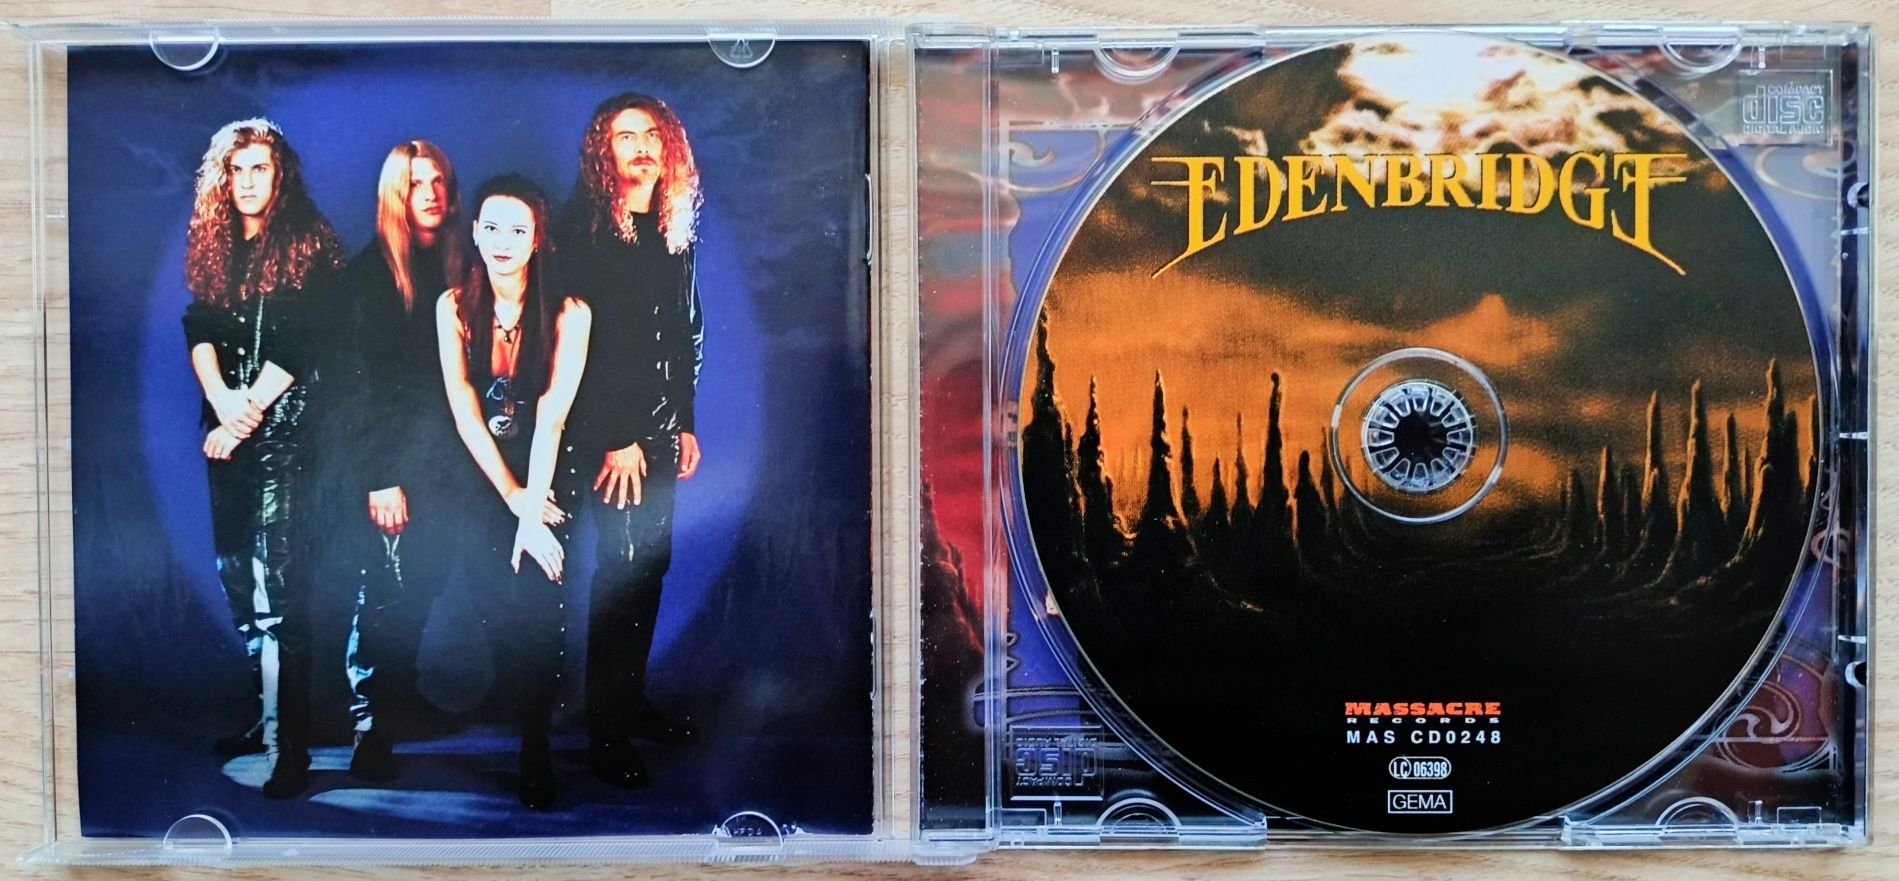 Edenbridge - Sunrise In Eden CD